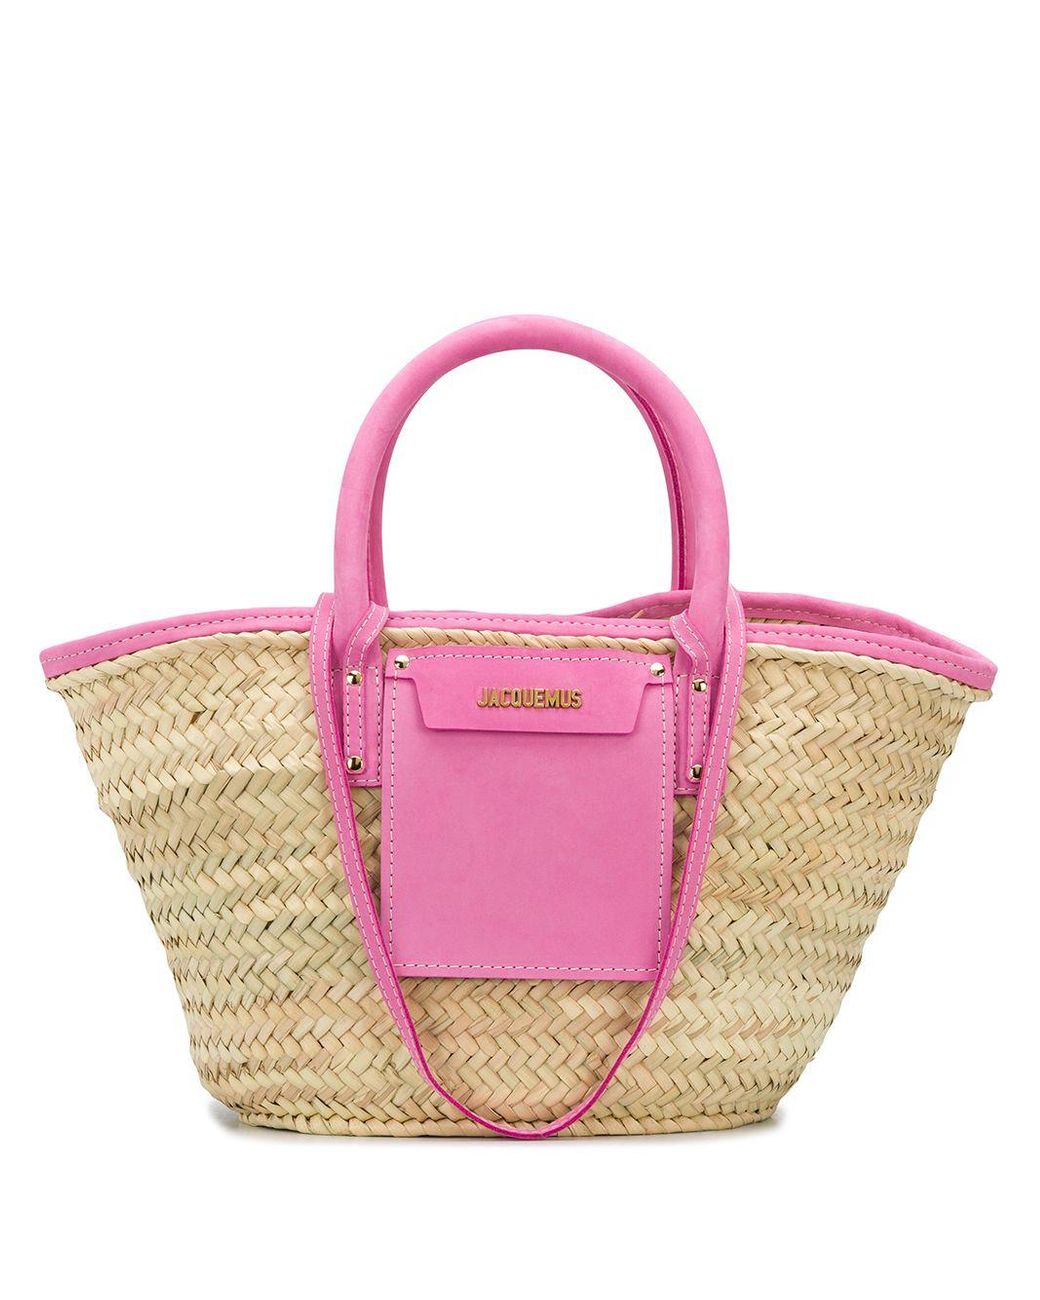 Jacquemus Soleil Hand-braided Beach Bag in Pink | Lyst Australia